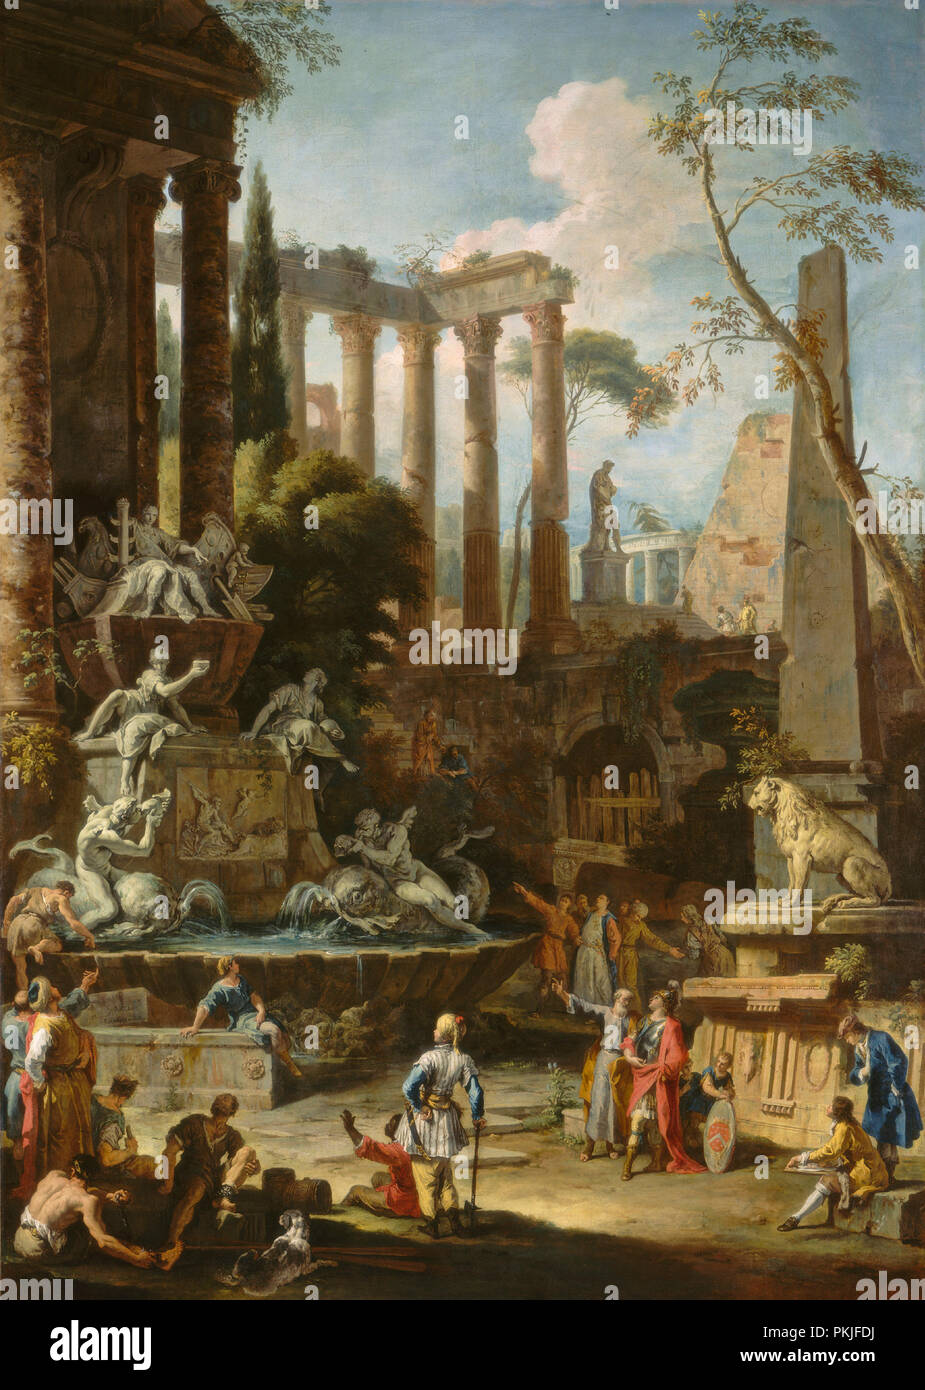 Monument à l'amiral Sir Clowdisley pelle. En date du : 1725. Dimensions : hors tout : 222,1 x 158,8 cm (87 7/16 x 62 1/2 in.) : 251,3 x 188,4 encadrée x 10,8 cm (98 15/16 x 74 3/16 x 4 1/4 in.). Médium : Huile sur toile. Musée : National Gallery of Art, Washington DC. Auteur : Sebastiano Ricci et Marco Ricci. Banque D'Images